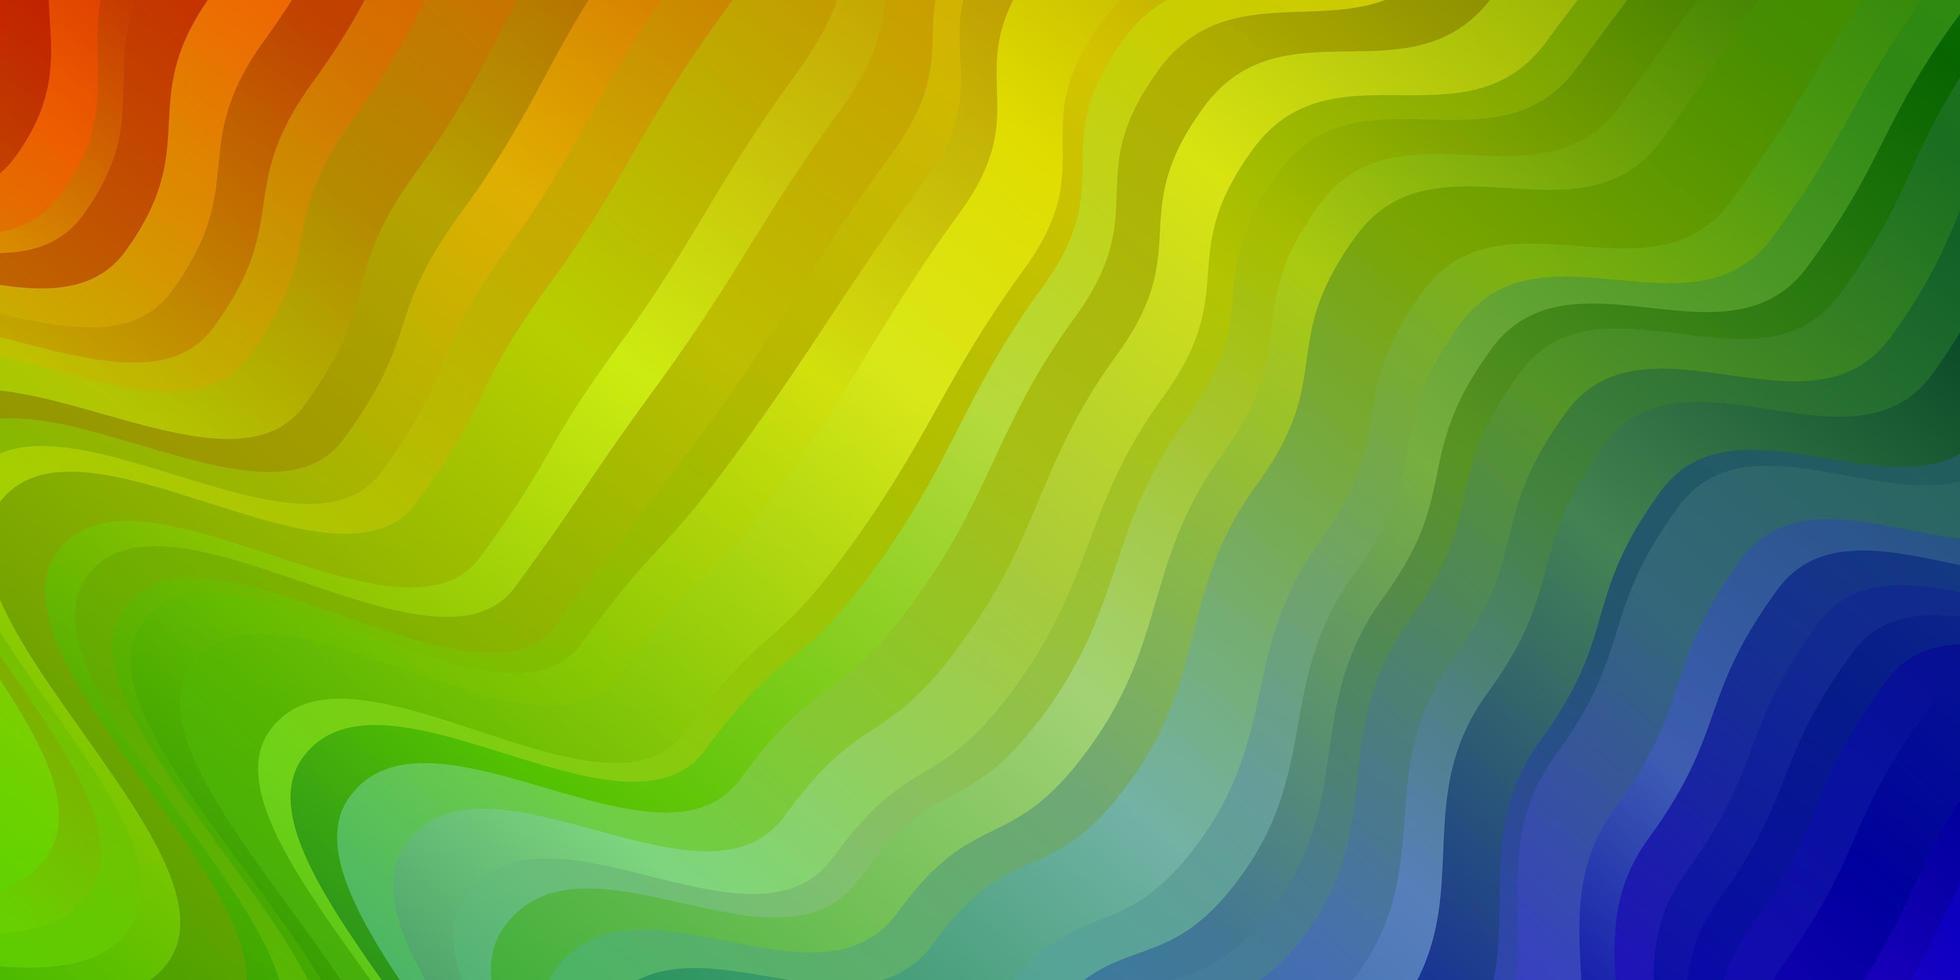 sfondo vettoriale multicolore chiaro con linee piegate.